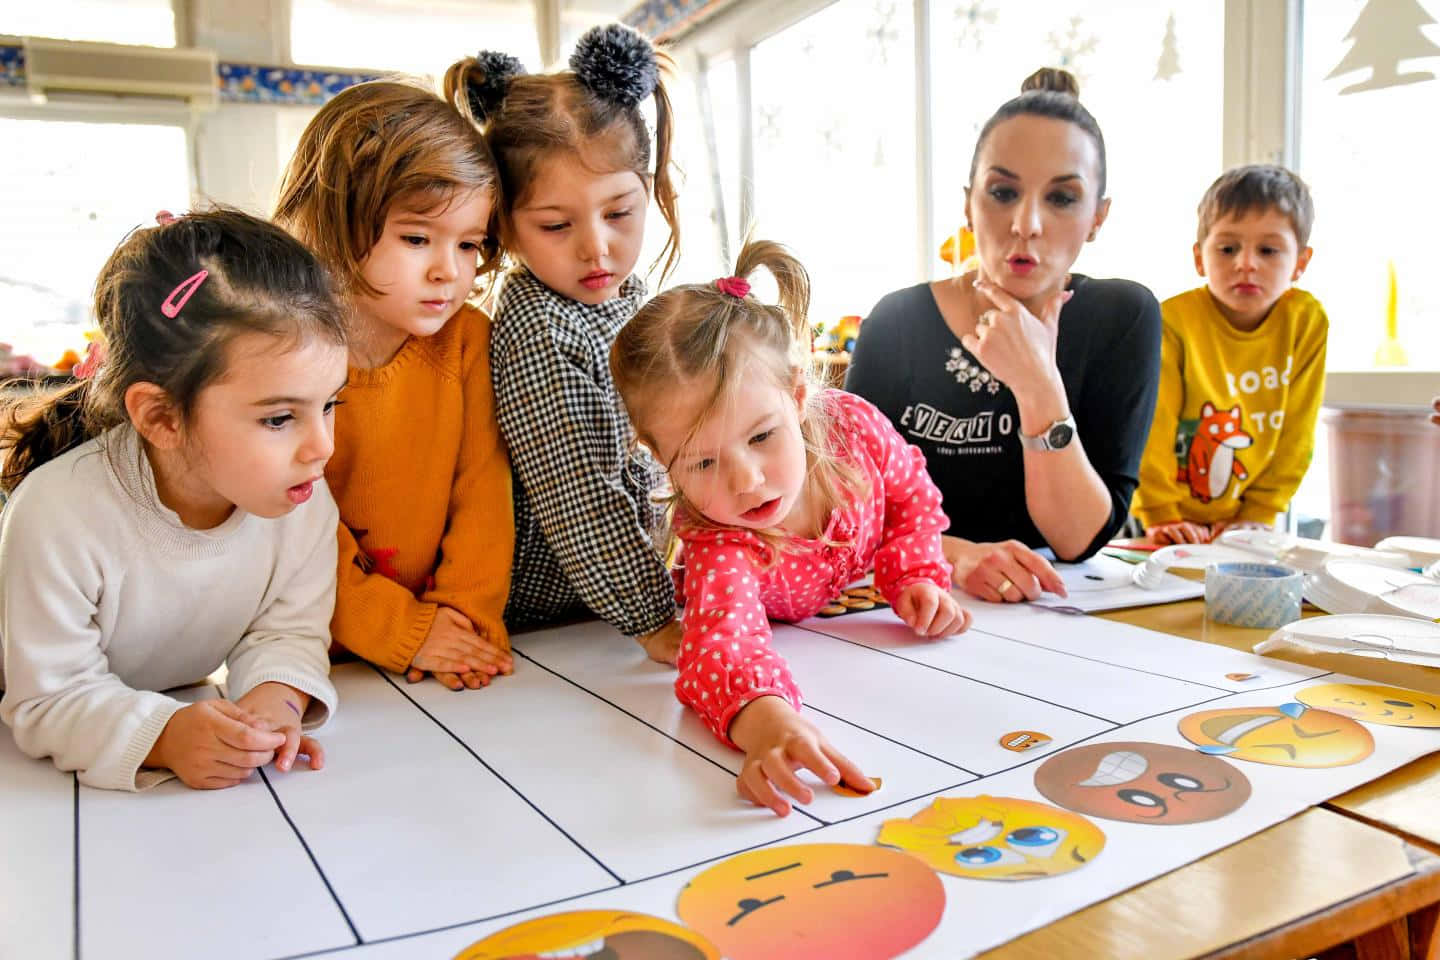 Einegruppe Von Kindern Schaut Auf Ein Papier Mit Emojis.